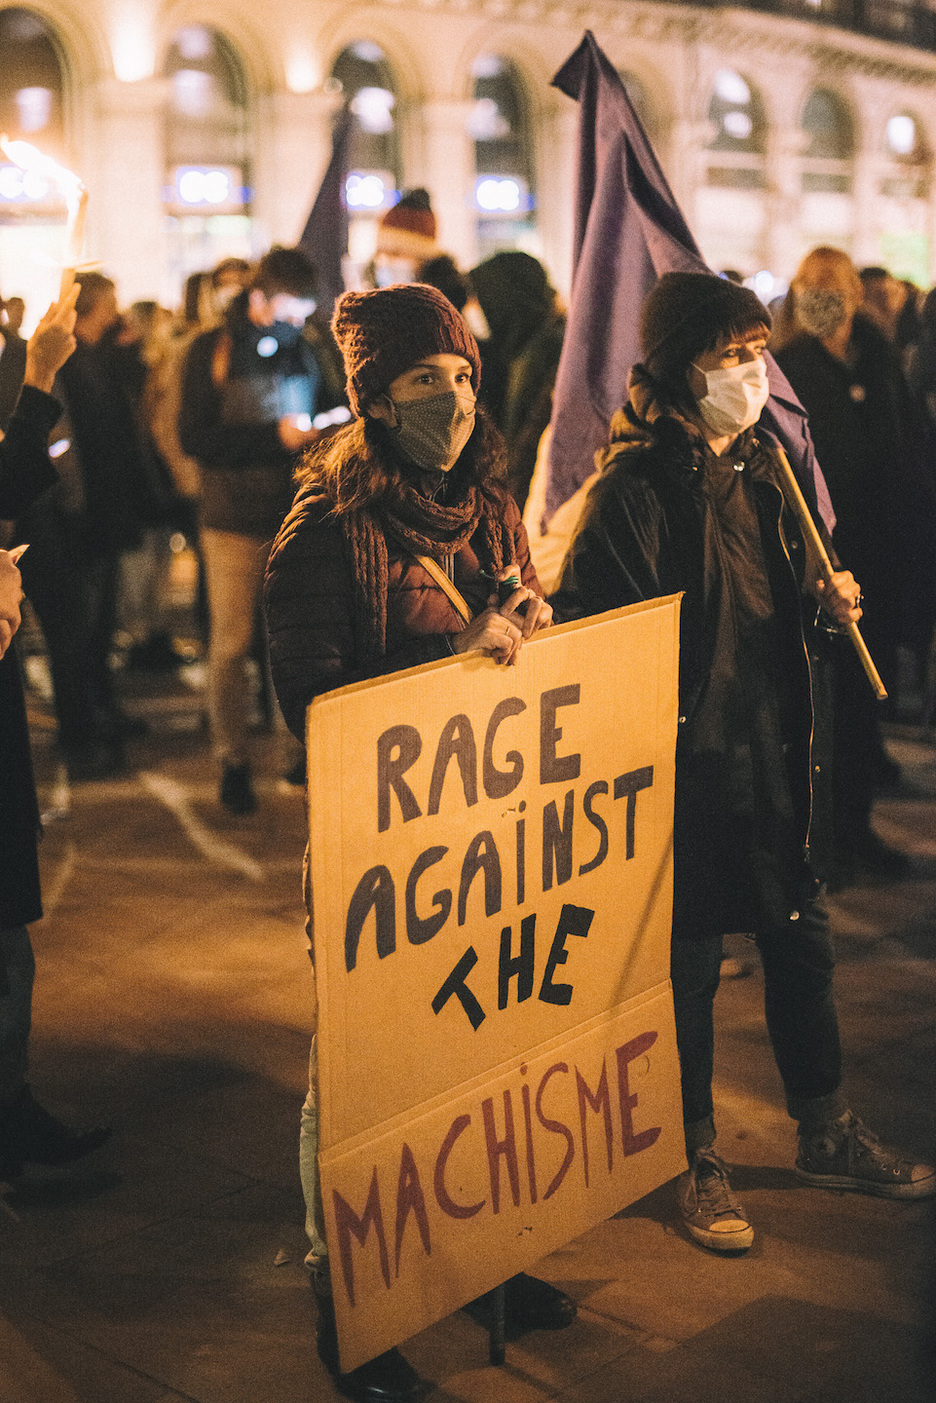 Le célèbre groupe de rap métal américain, "Rage Against The Machine" a vu son nom détourné lors ce cette manifestation bayonnaise. © Guillaume FAUVEA